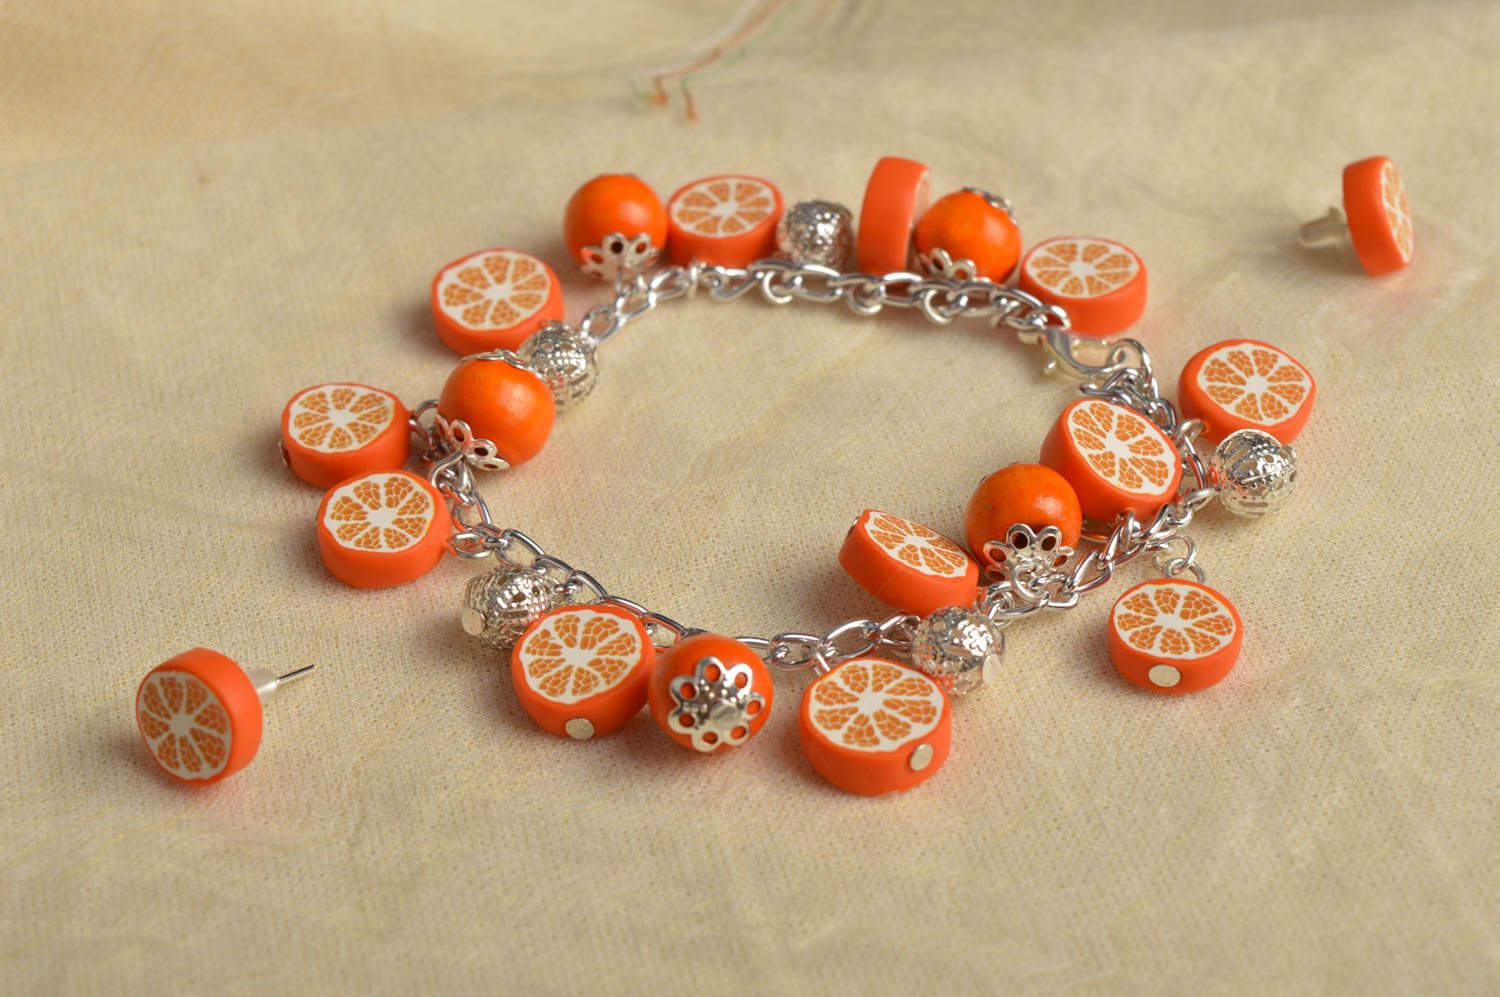 Wrist bracelet fashion earrings polymer clay jewelry oranges women jewelry  photo 1